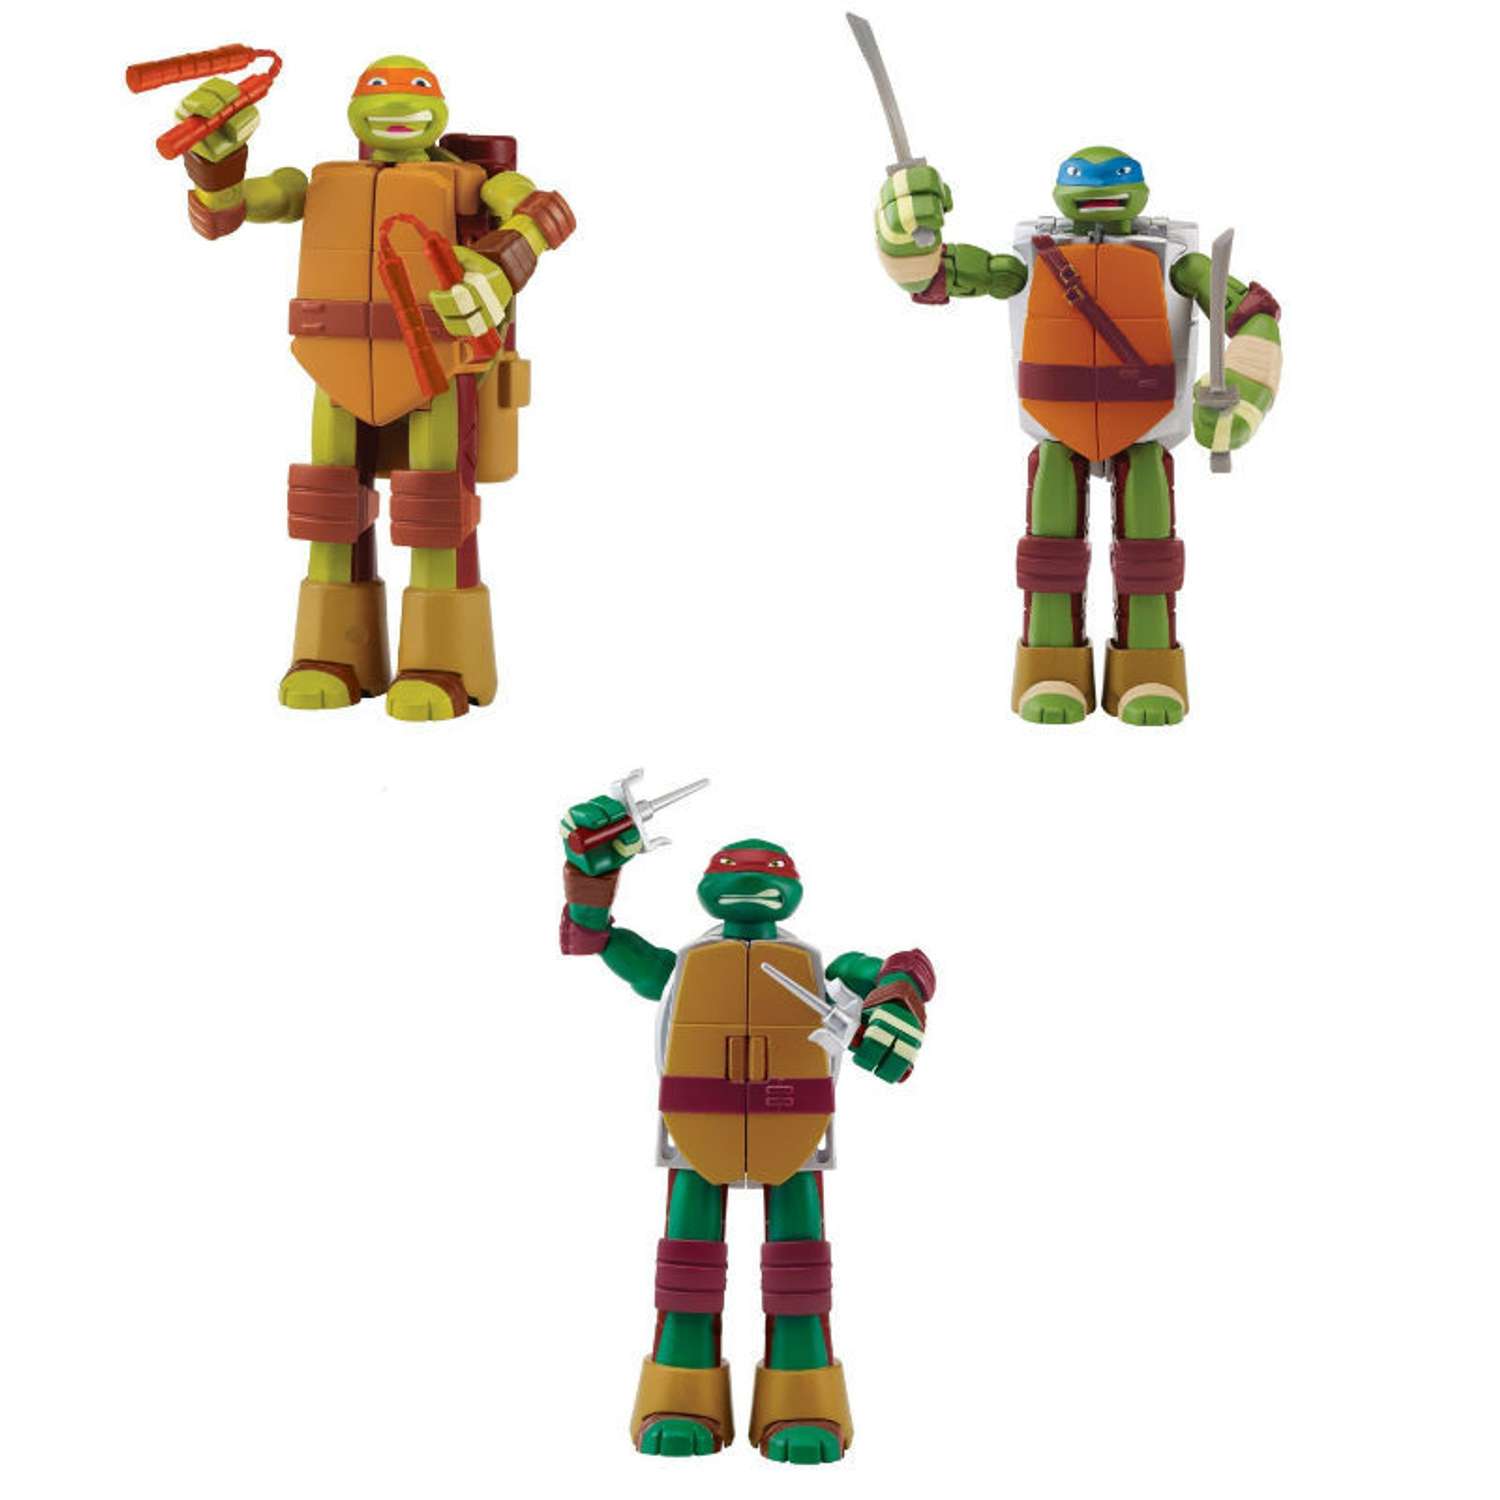 Черепашка-оружие Ninja Turtles(Черепашки Ниндзя) Mutation в ассортименте - фото 1